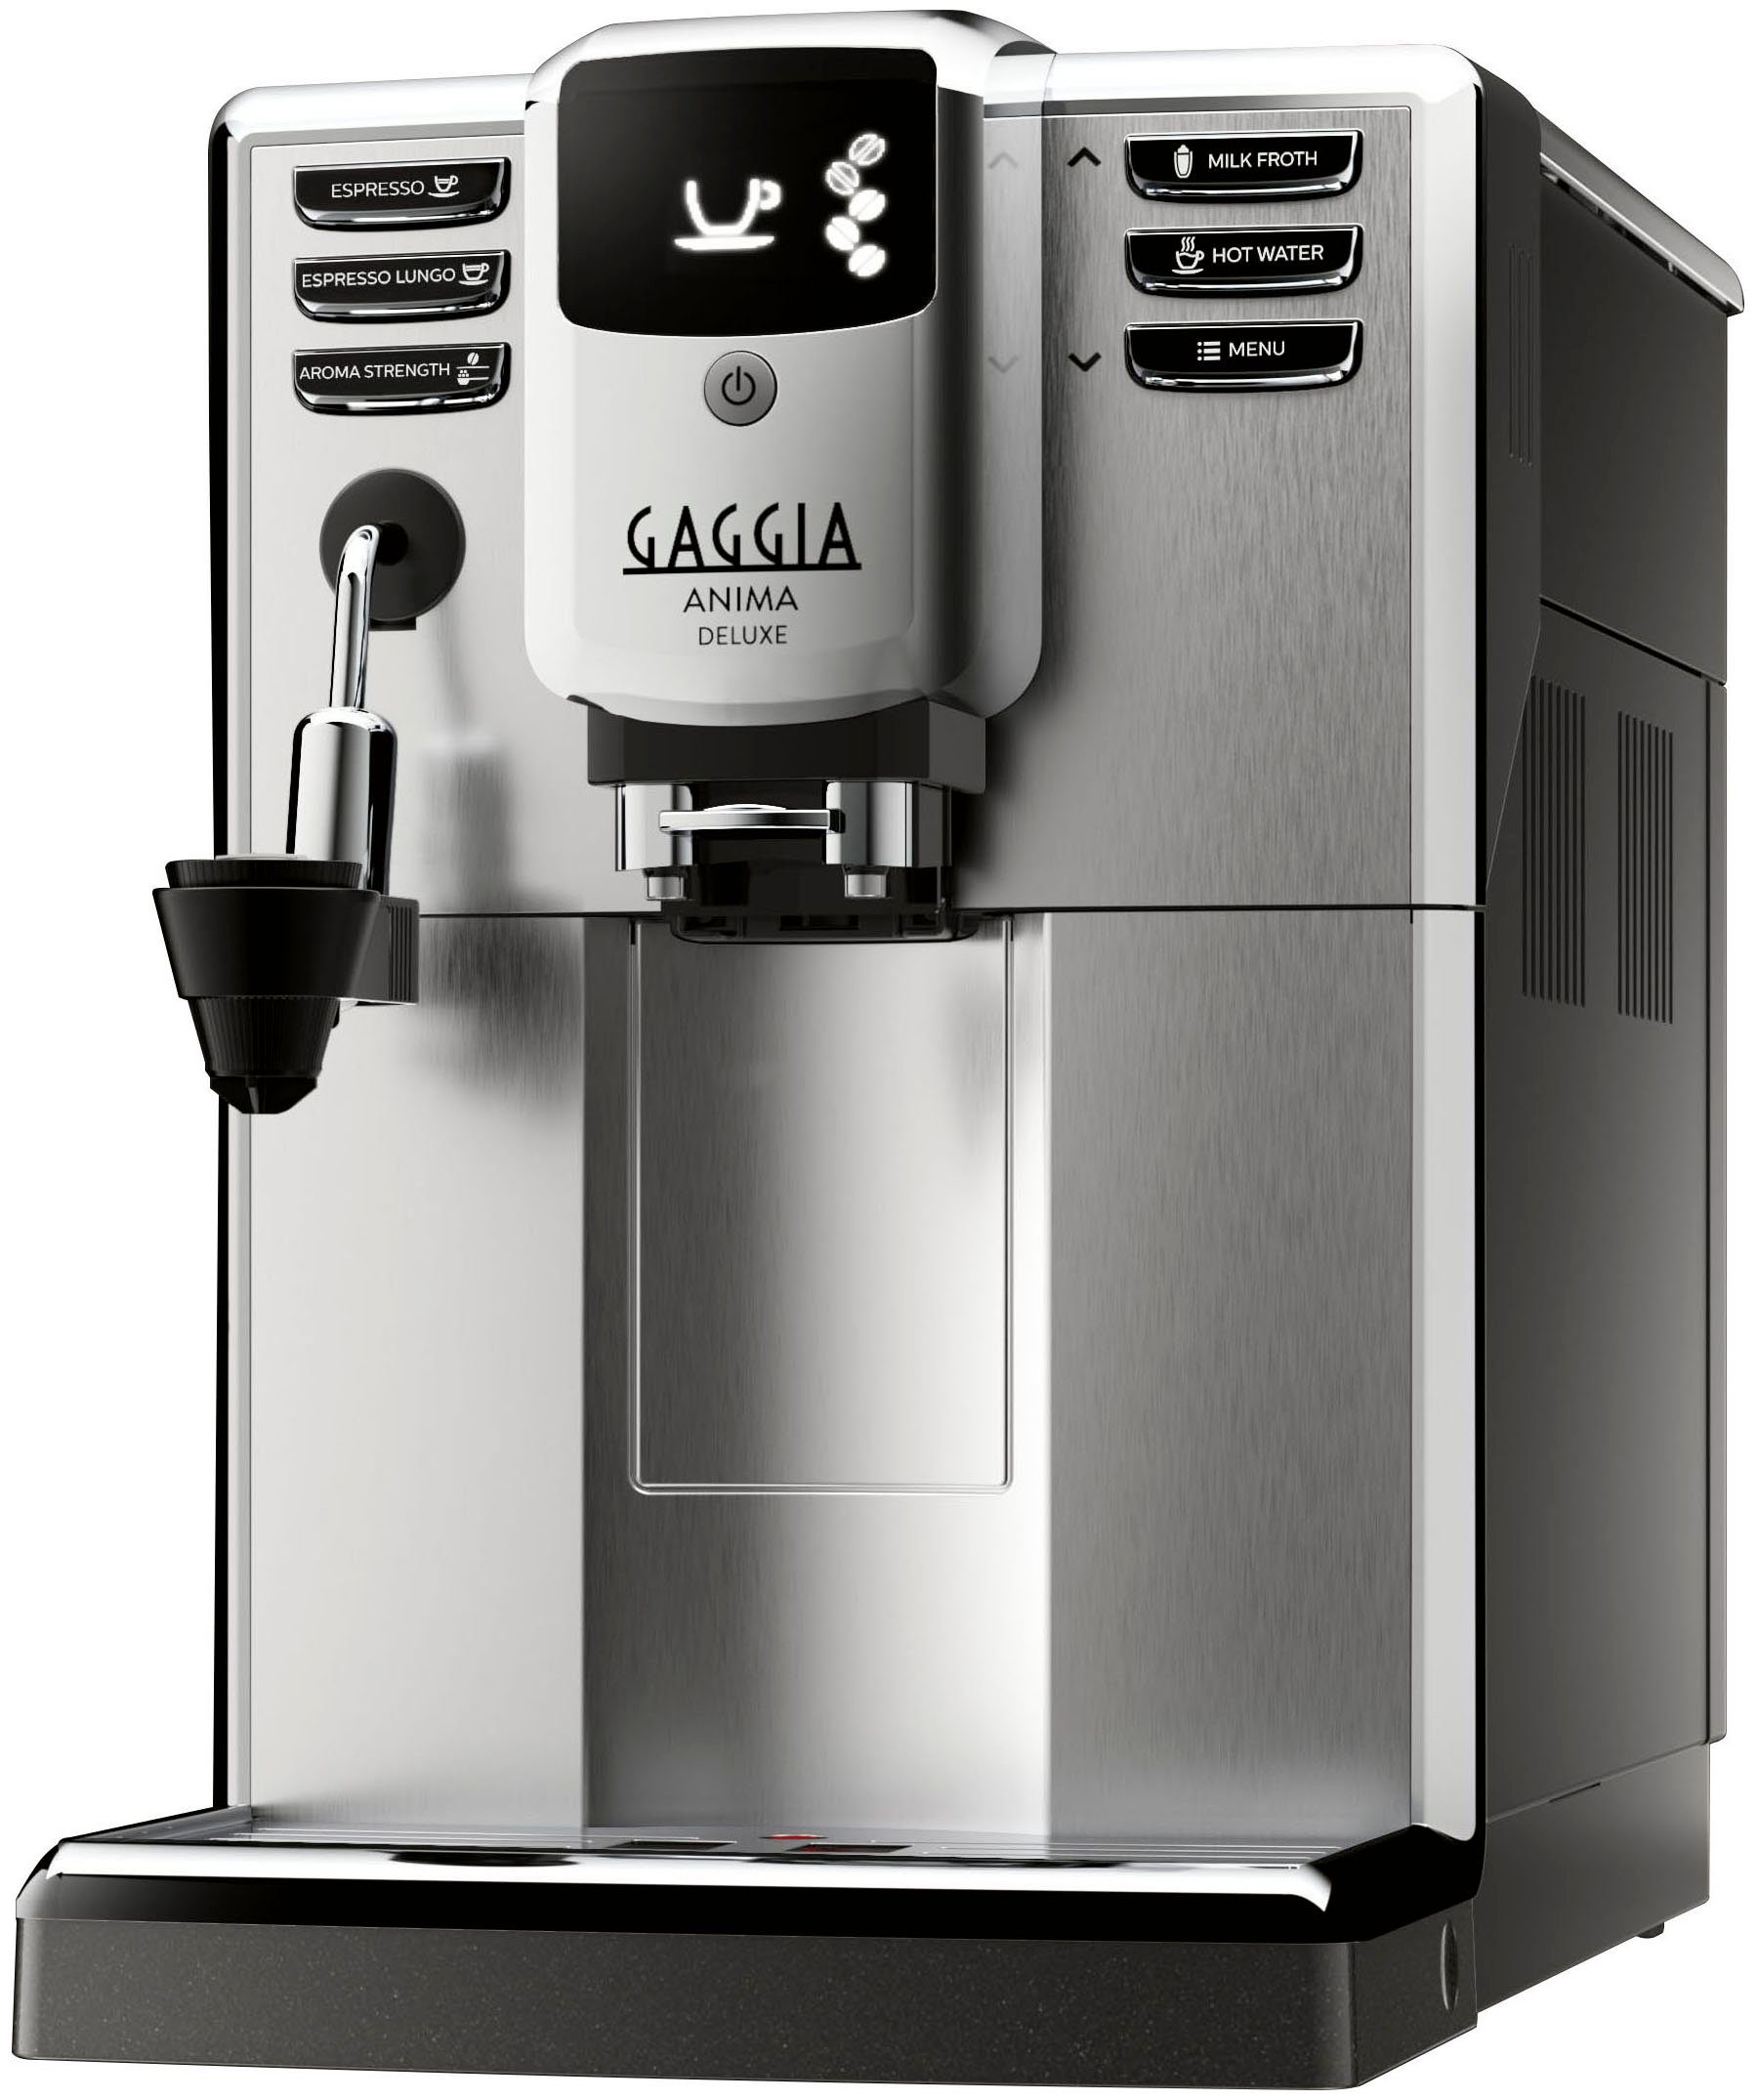 Gaggia Kaffeevollautomat Anima Deluxe online kaufen | OTTO